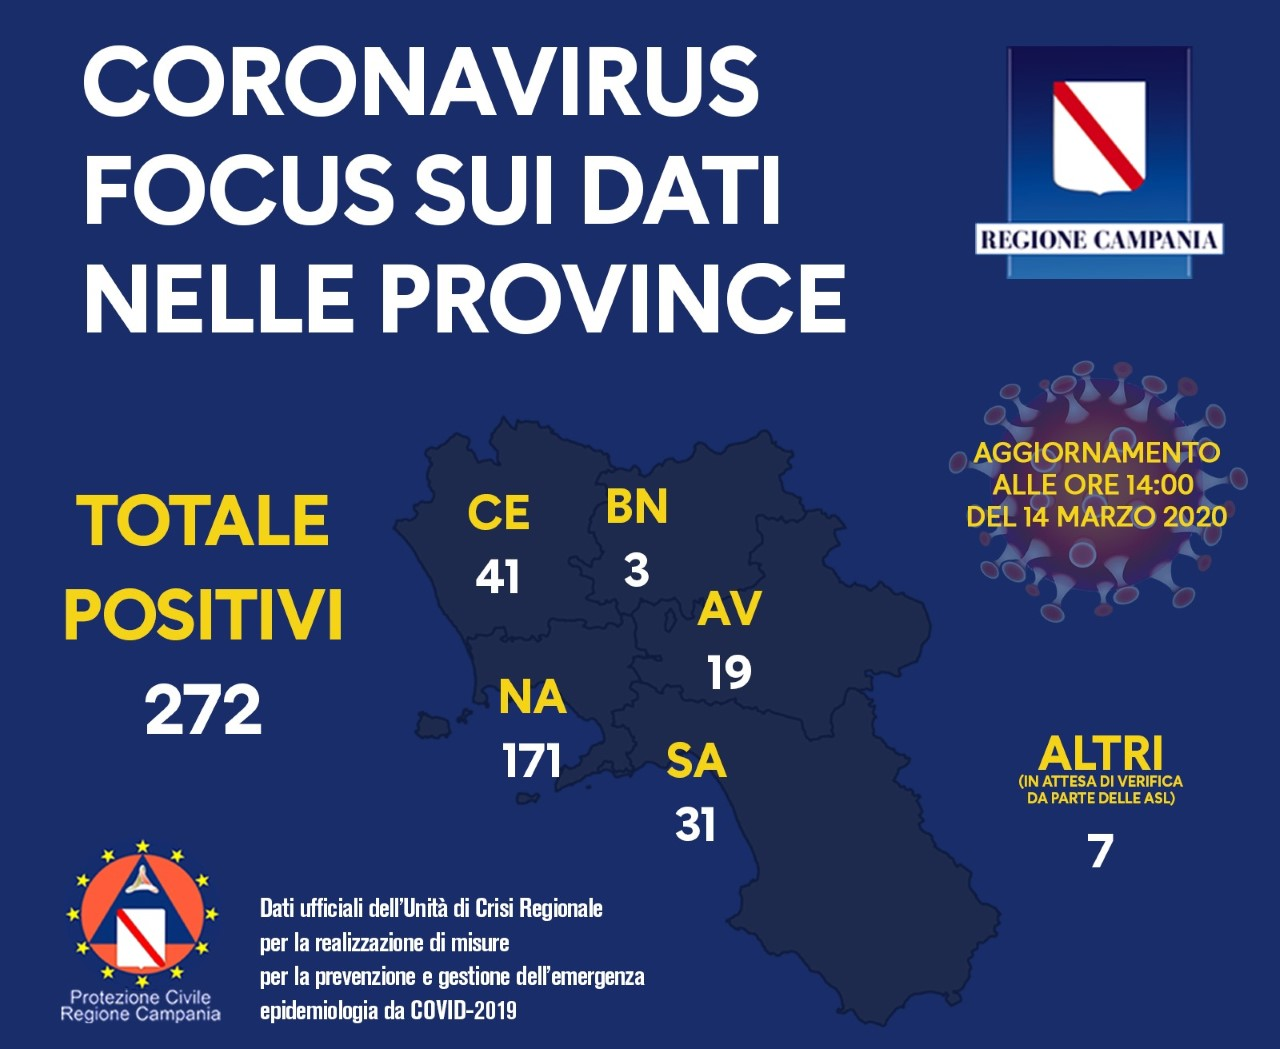 Coronavirus dati in Campania, + 52 rispetto a ieri, siamo a un totale di 272